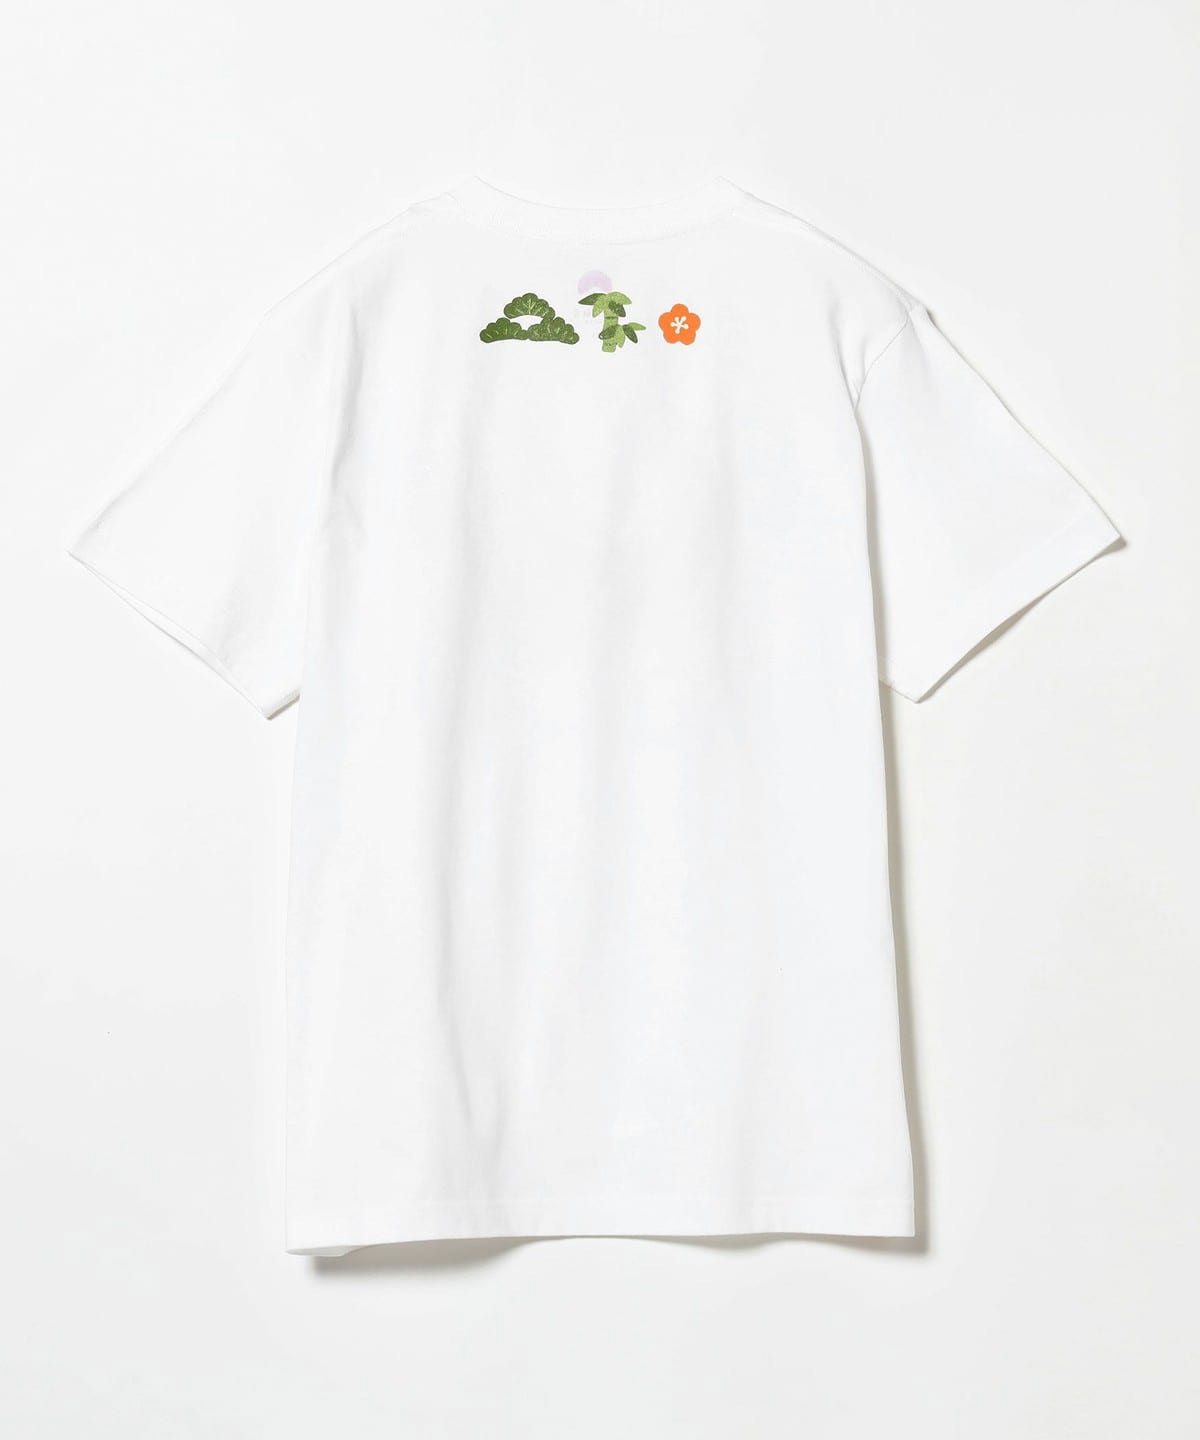 shirt t-shirt Clothing apparel Tshirt Design Fashion  japan dragon